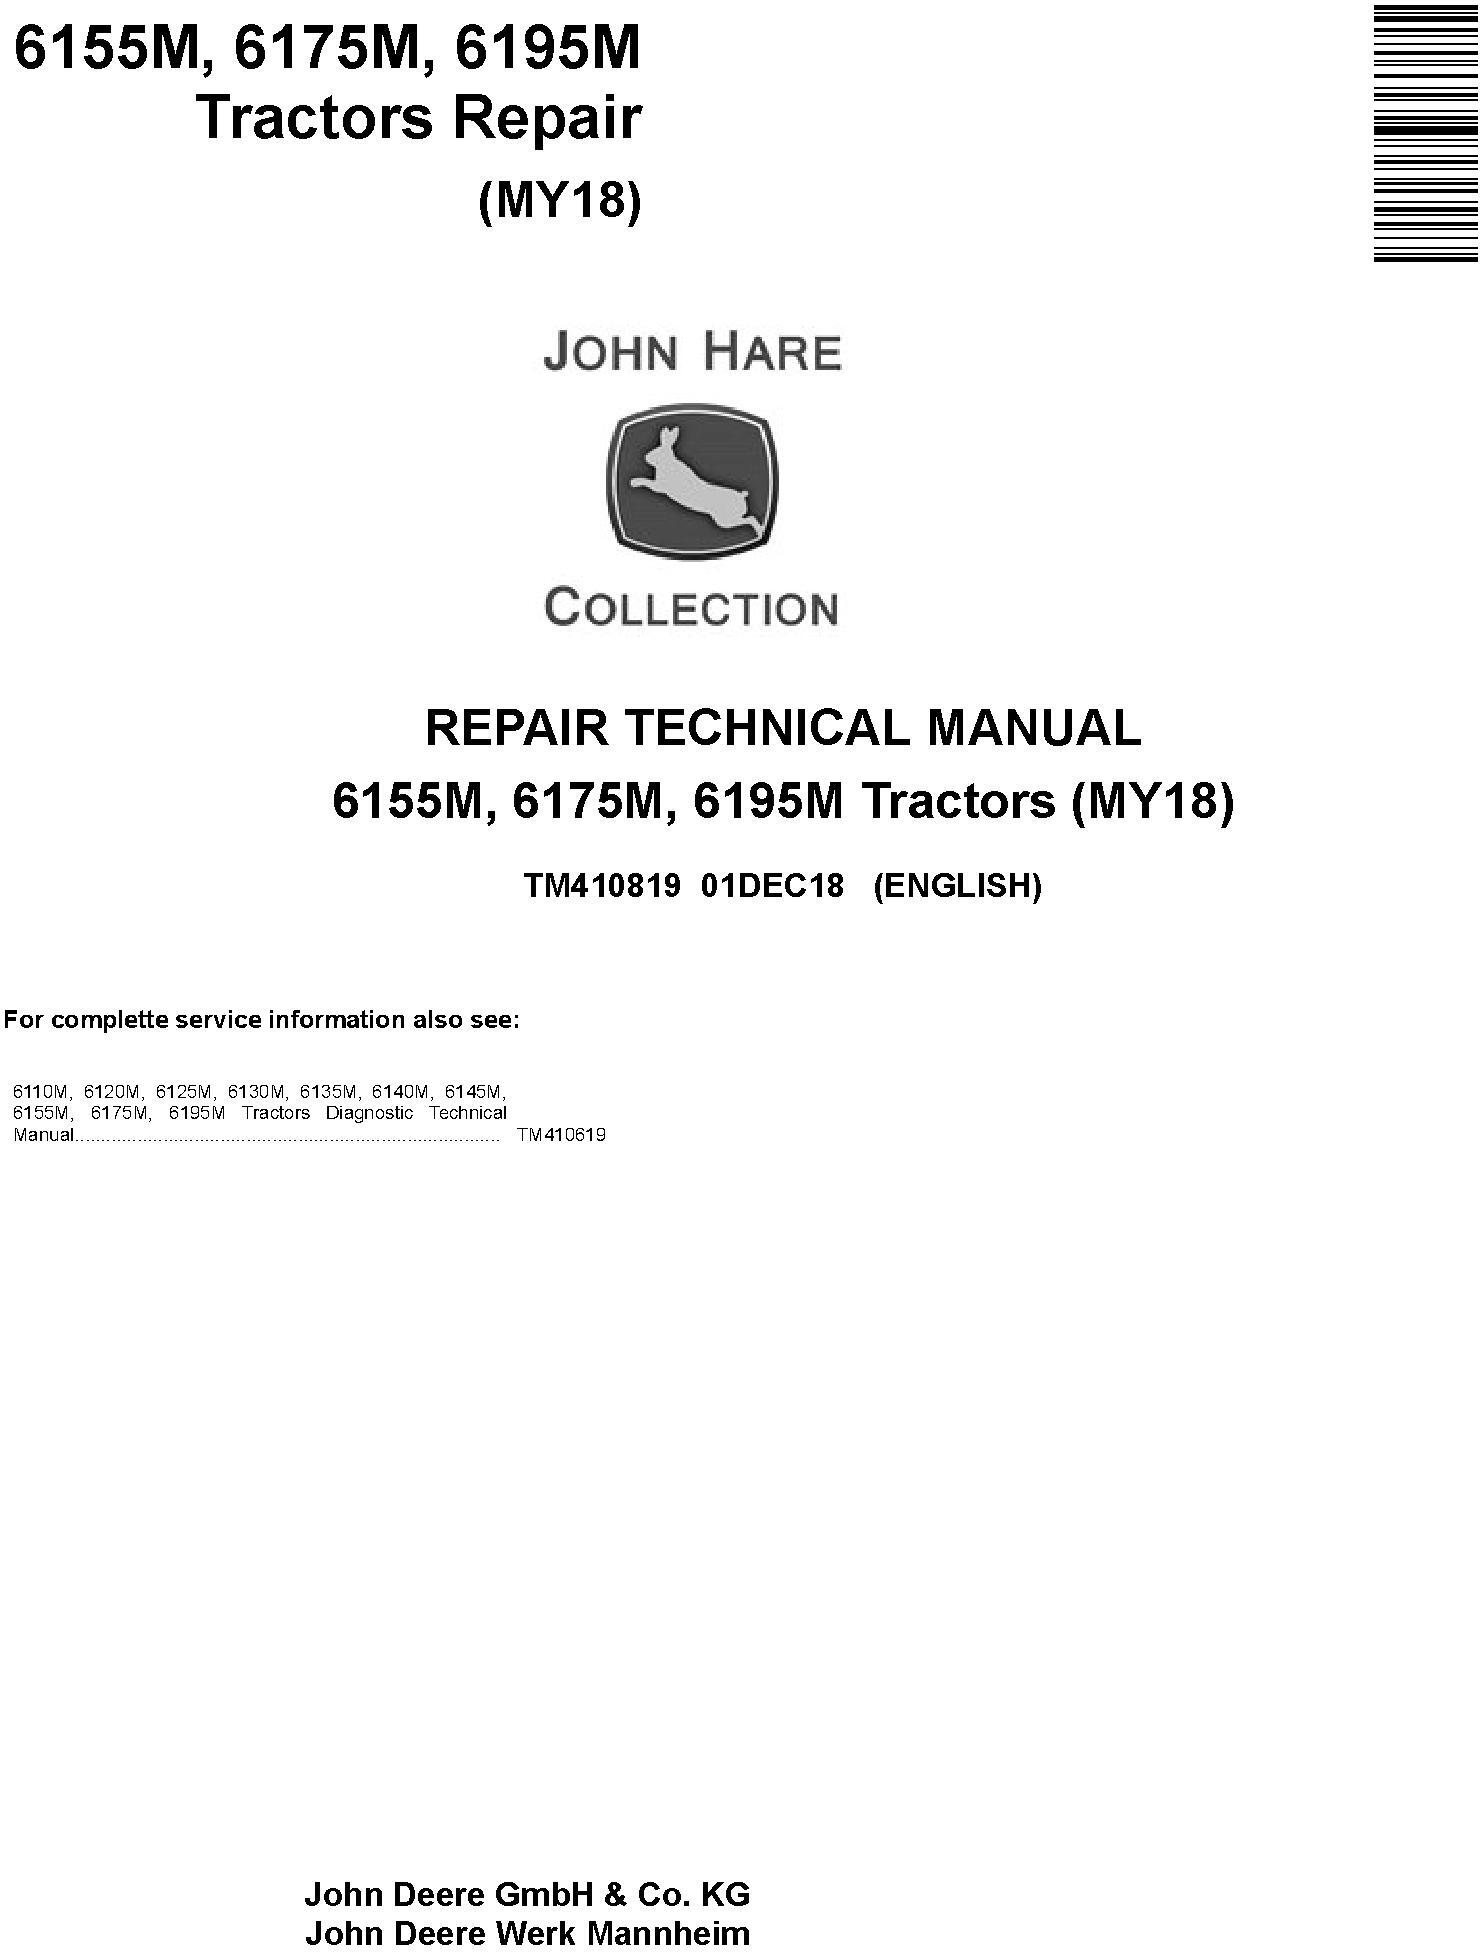 John Deere 6155M 6175M 6195M Tractor Repair Technical Manual TM410819